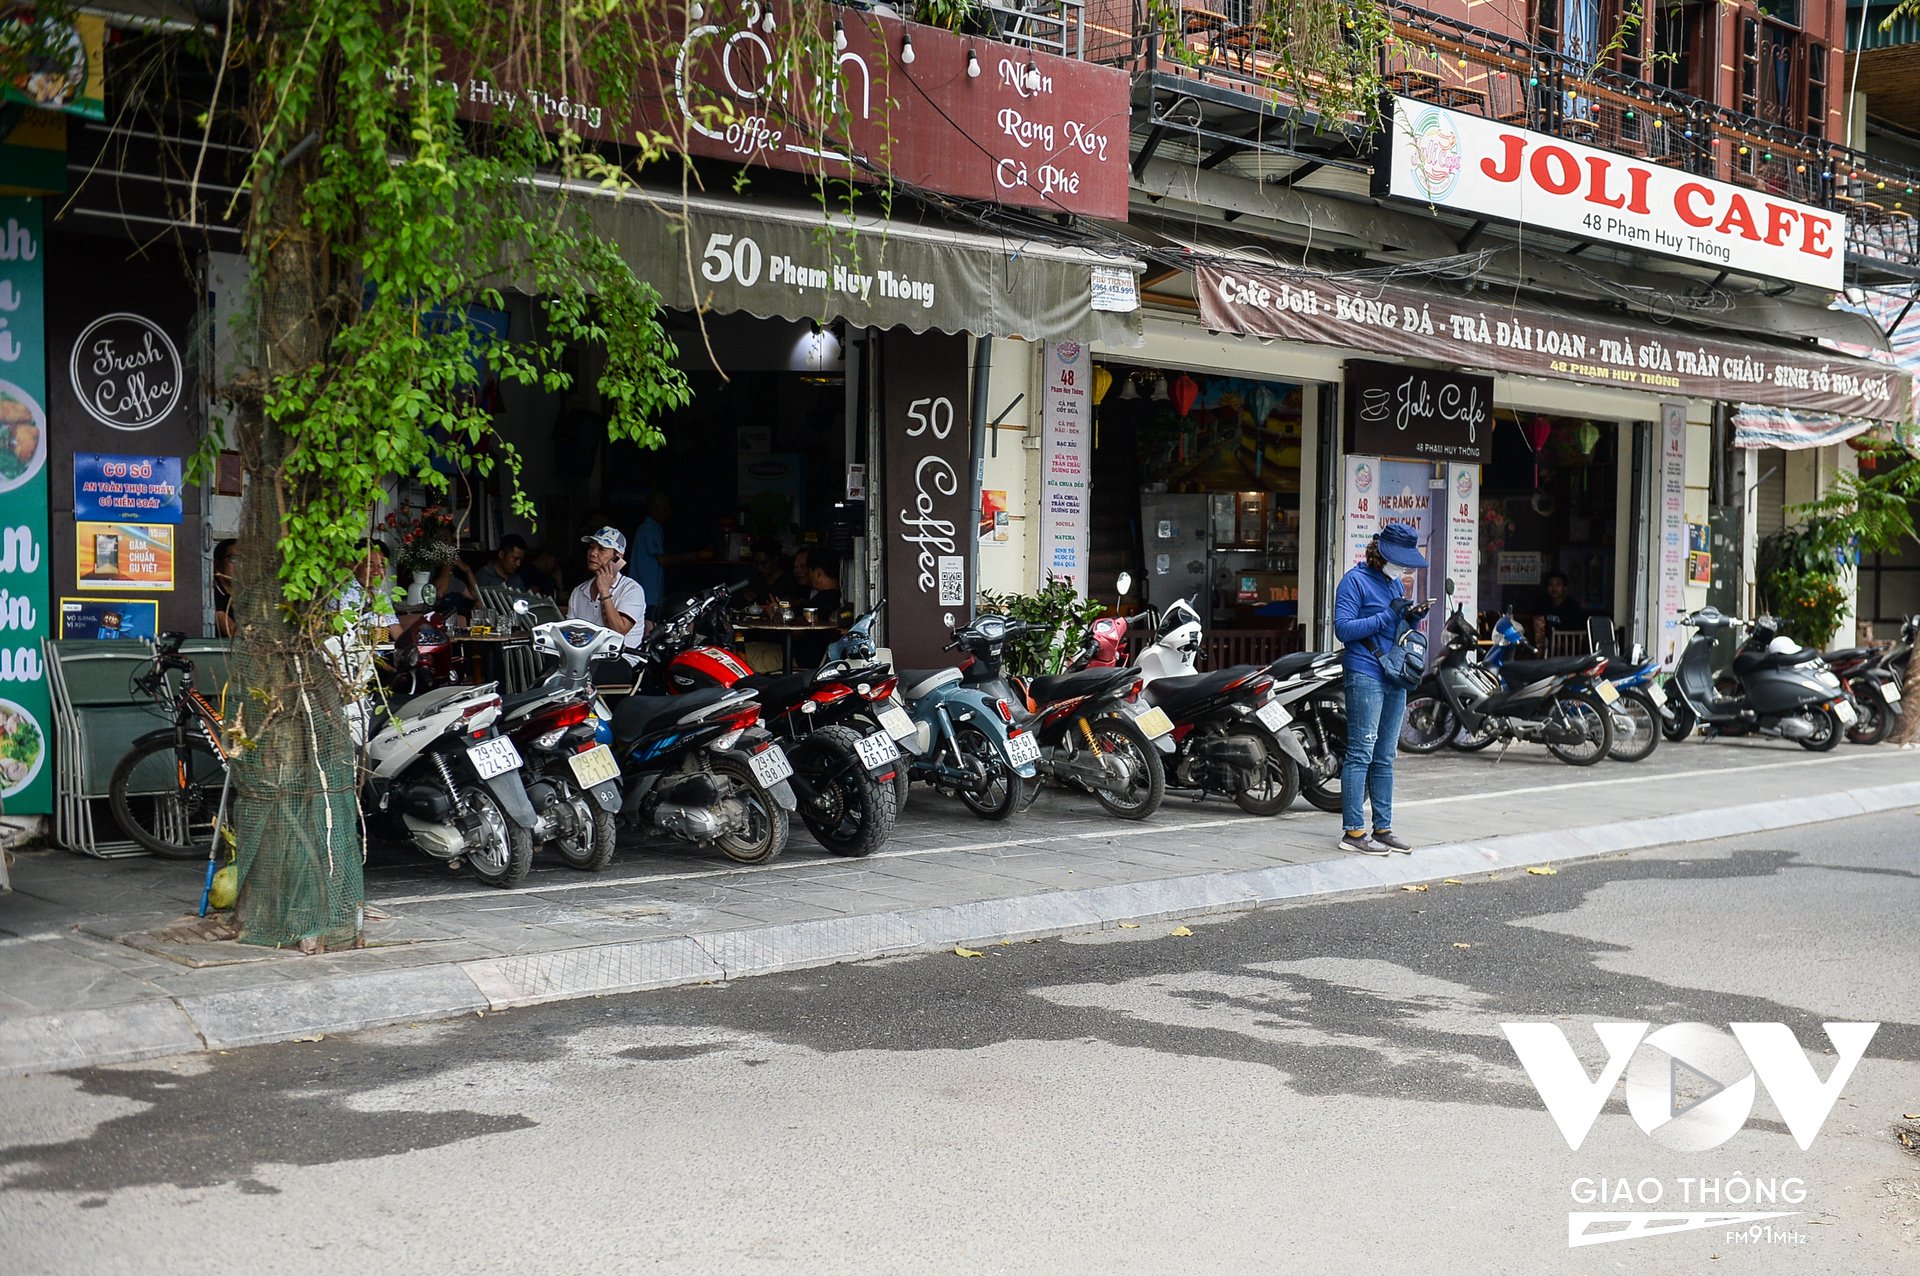 Các cửa hàng kinh doanh đồ uống, cà phê trên phố Phạm Huy Thông đã chấp hành, bỏ bàn ghế vào trong, để xe vào trong vạch sơn, nhường lại phần đường cho người đi bộ.